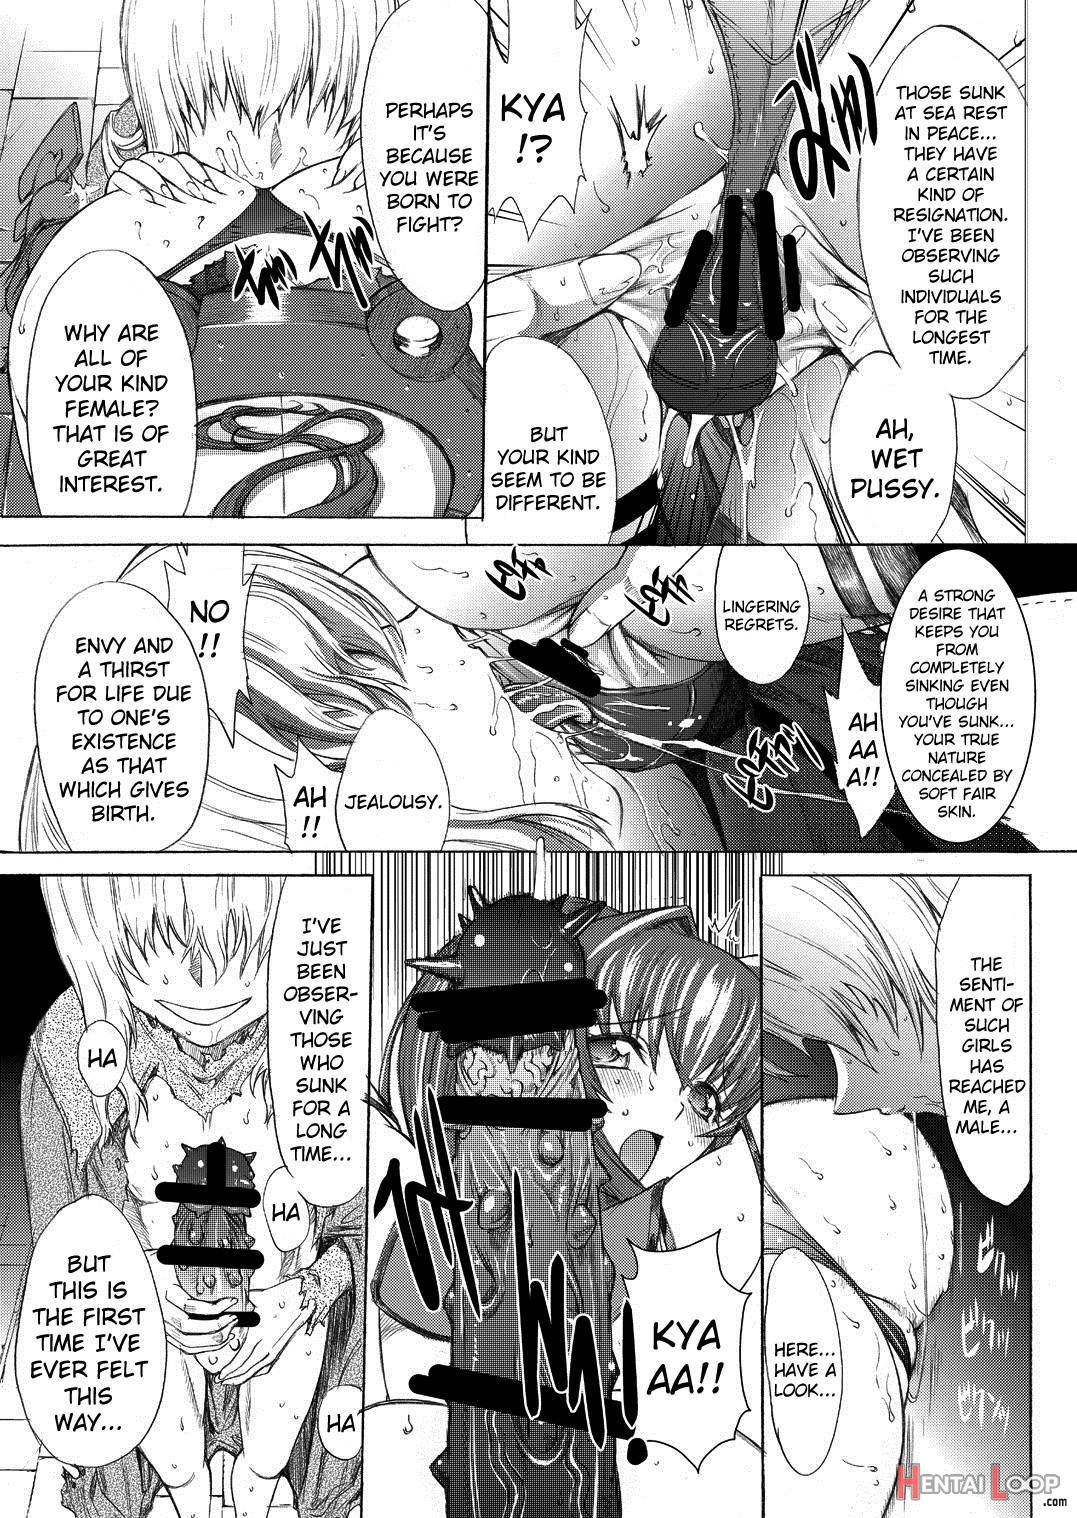 Yamato Shisu 2 page 9